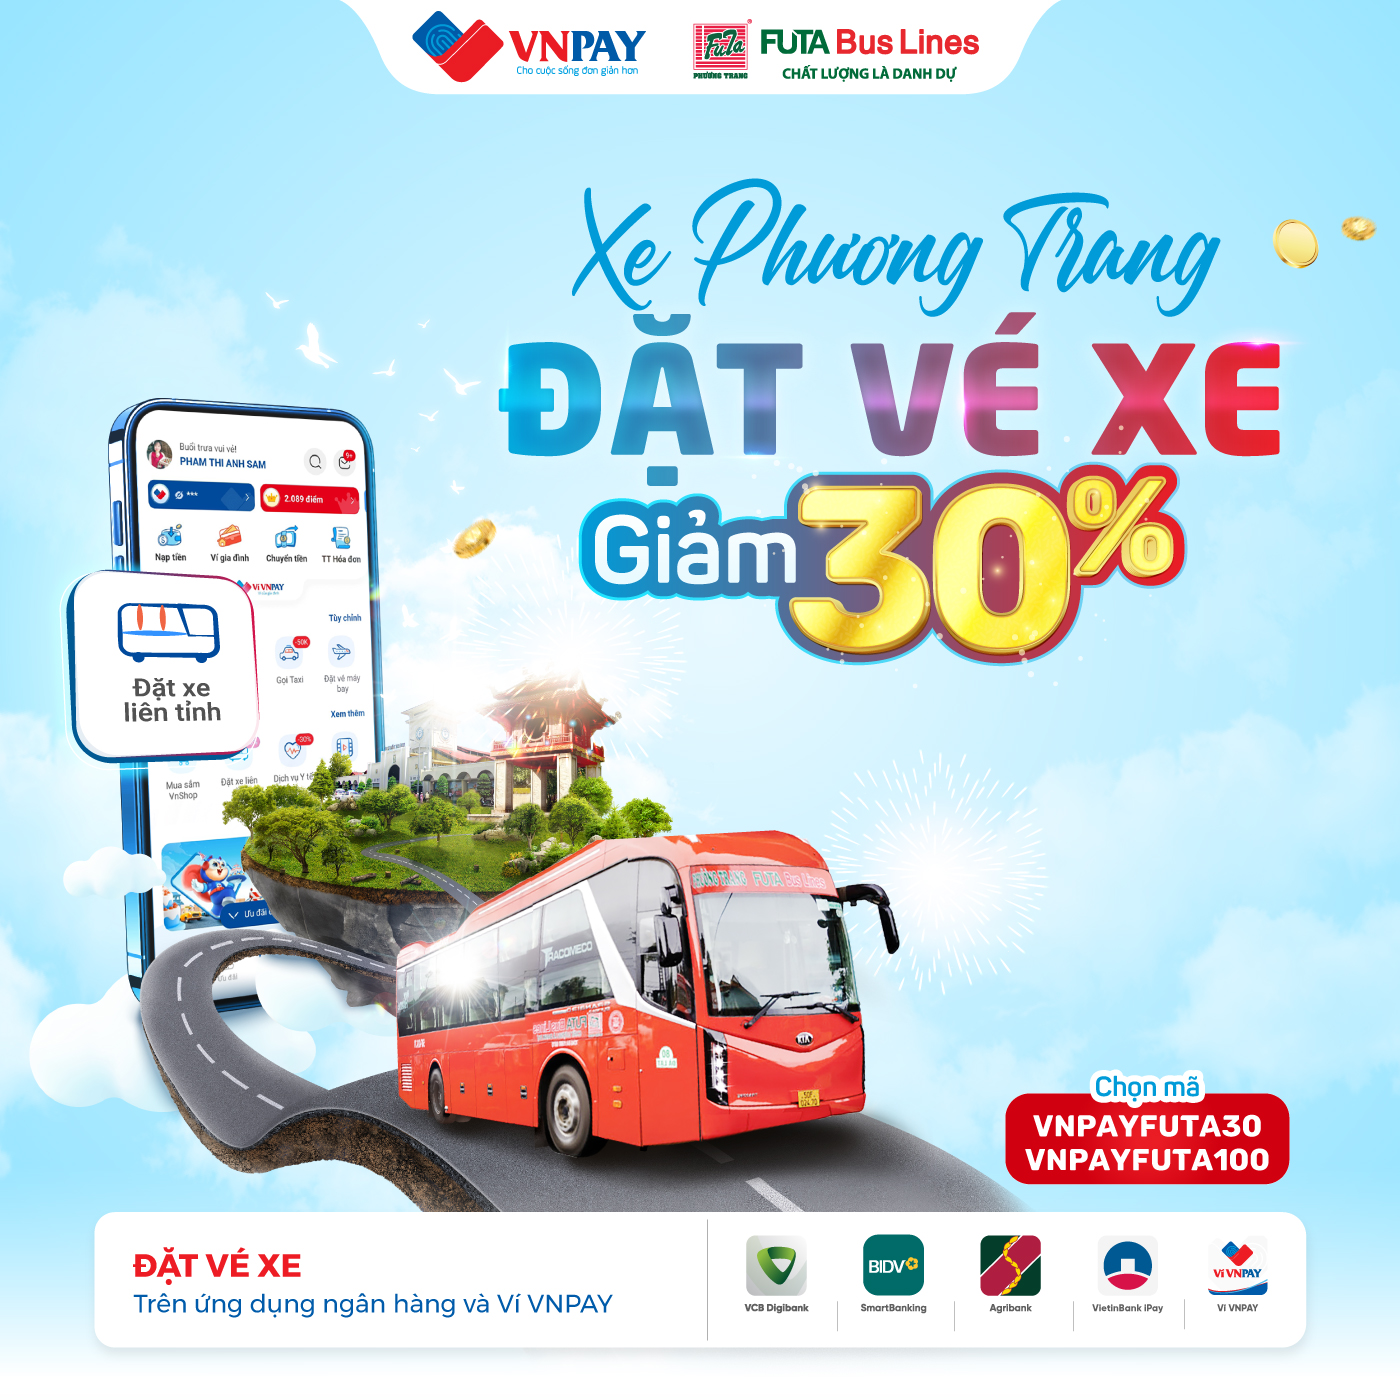 Hè đến, du lịch hay về quê thì hãy nhanh tay đặt vé xe Phương Trang trên ứng dụng ngân hàng và ví VNPAY để săn “deal hời”. 